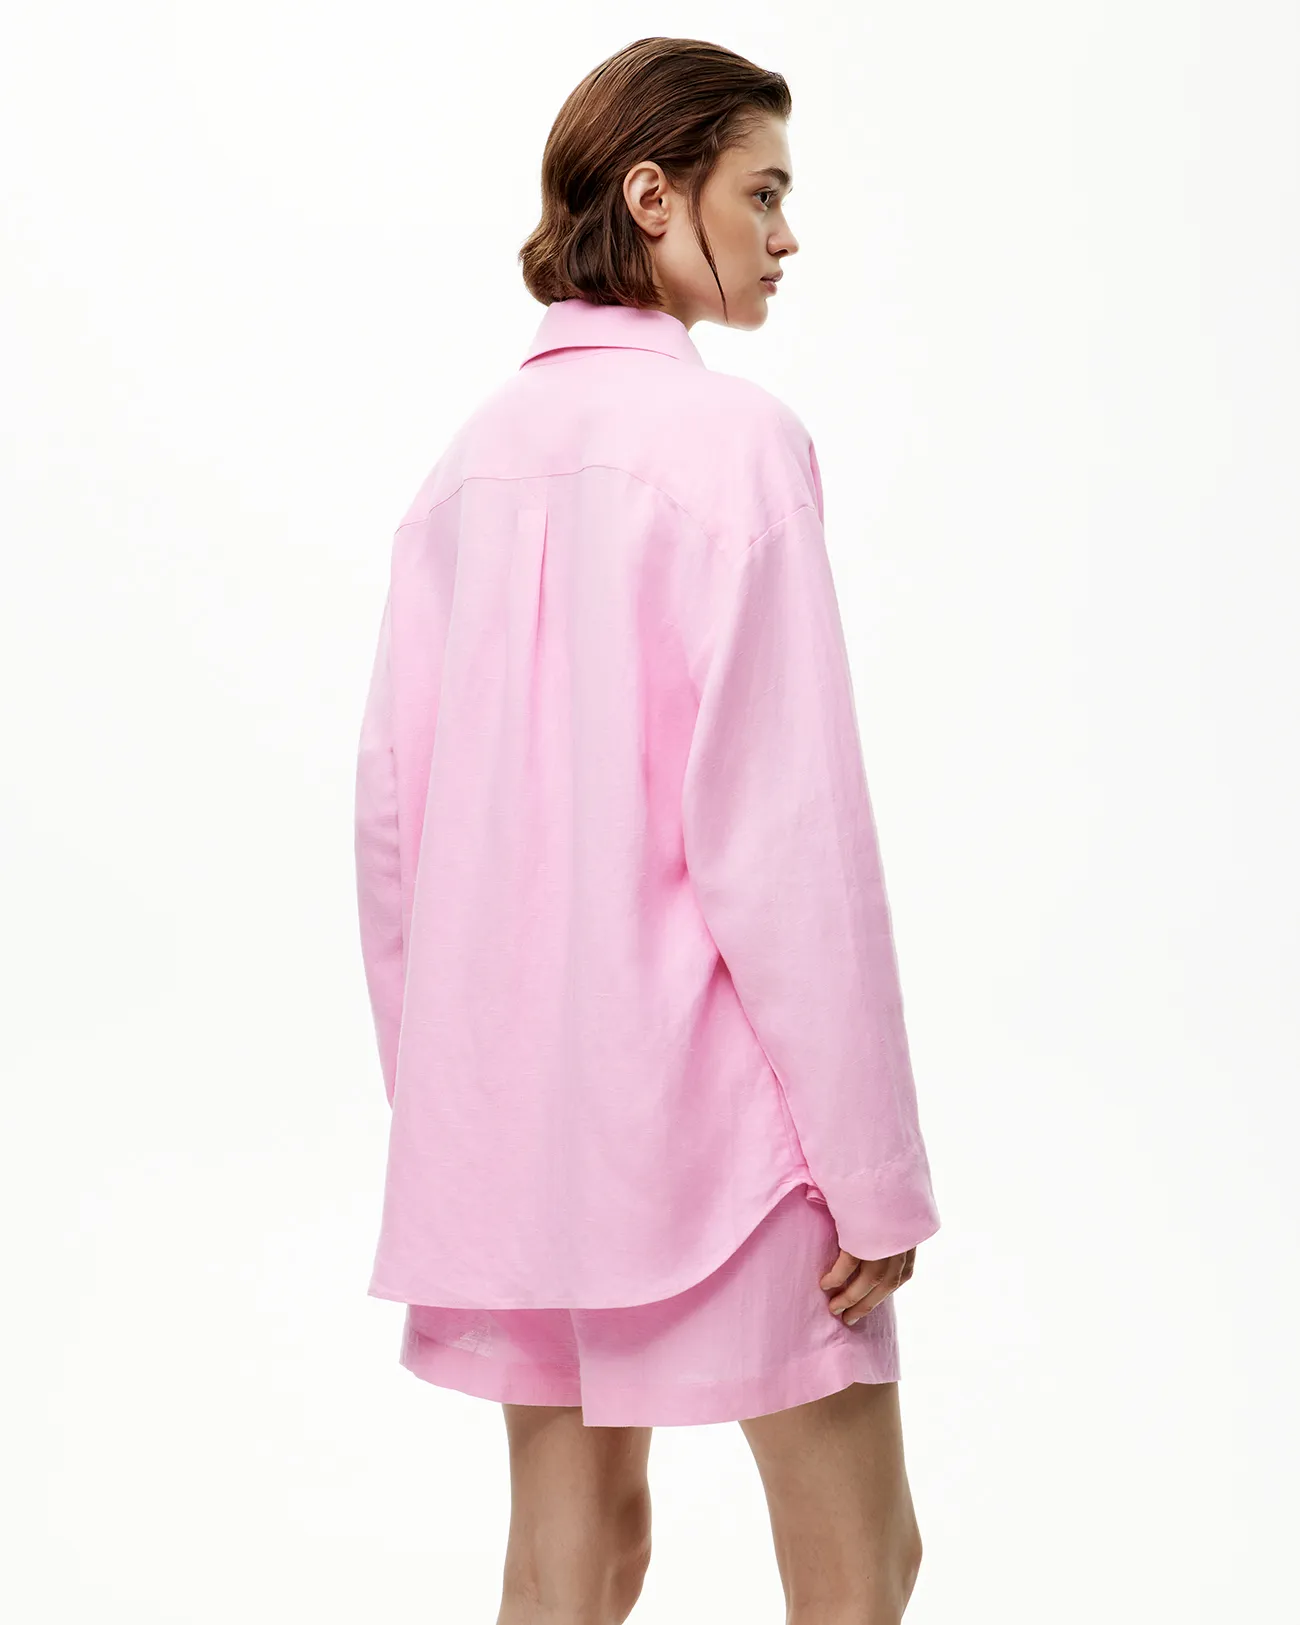 Комплект: рубашка и шорты розового цвета